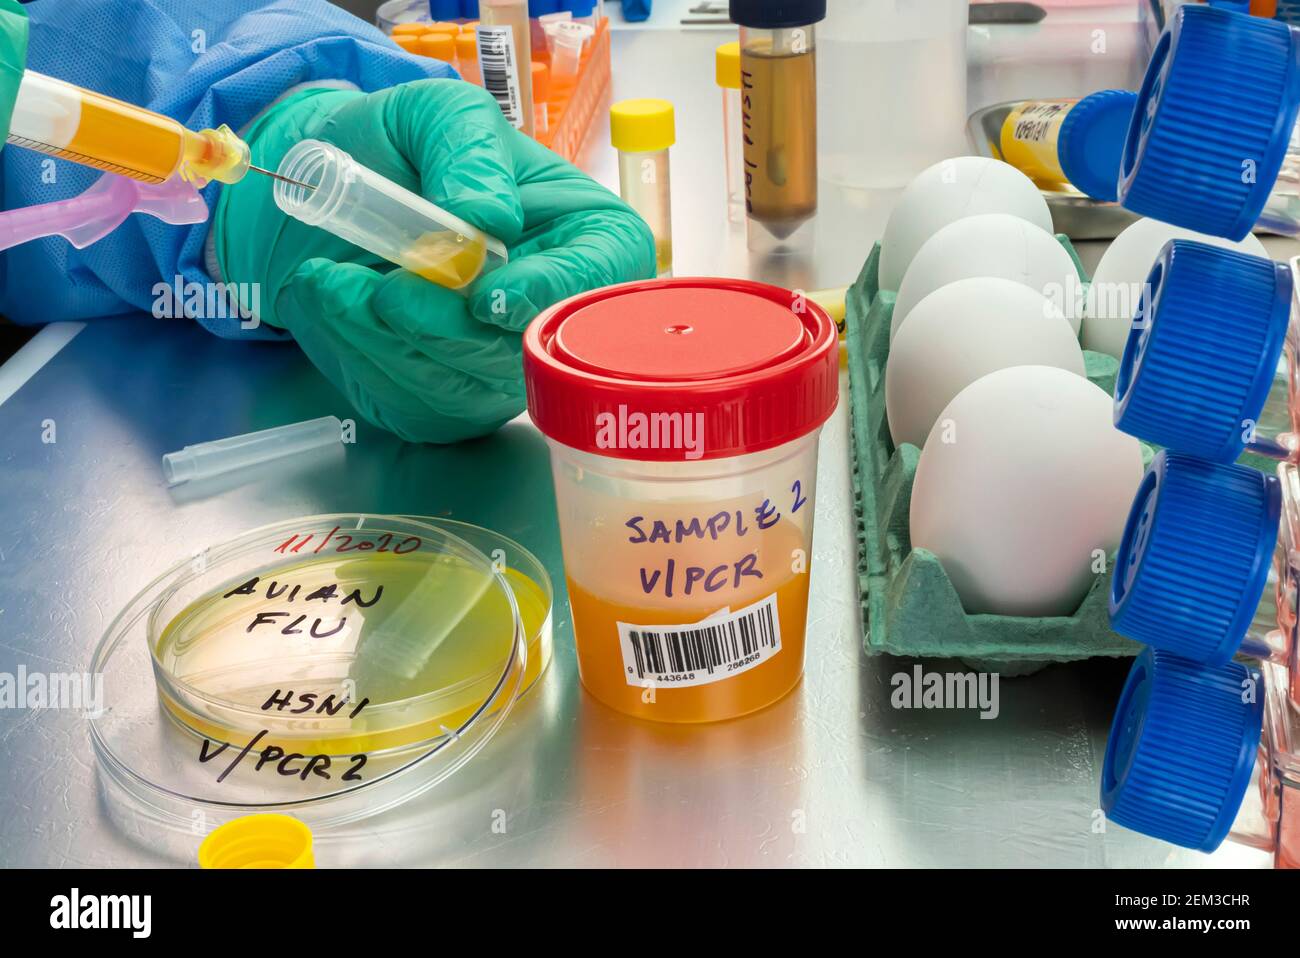 Campionamento scientifico di uova in cattive condizioni, analisi dell'influenza aviaria nell'uomo, immagine concettuale Foto Stock